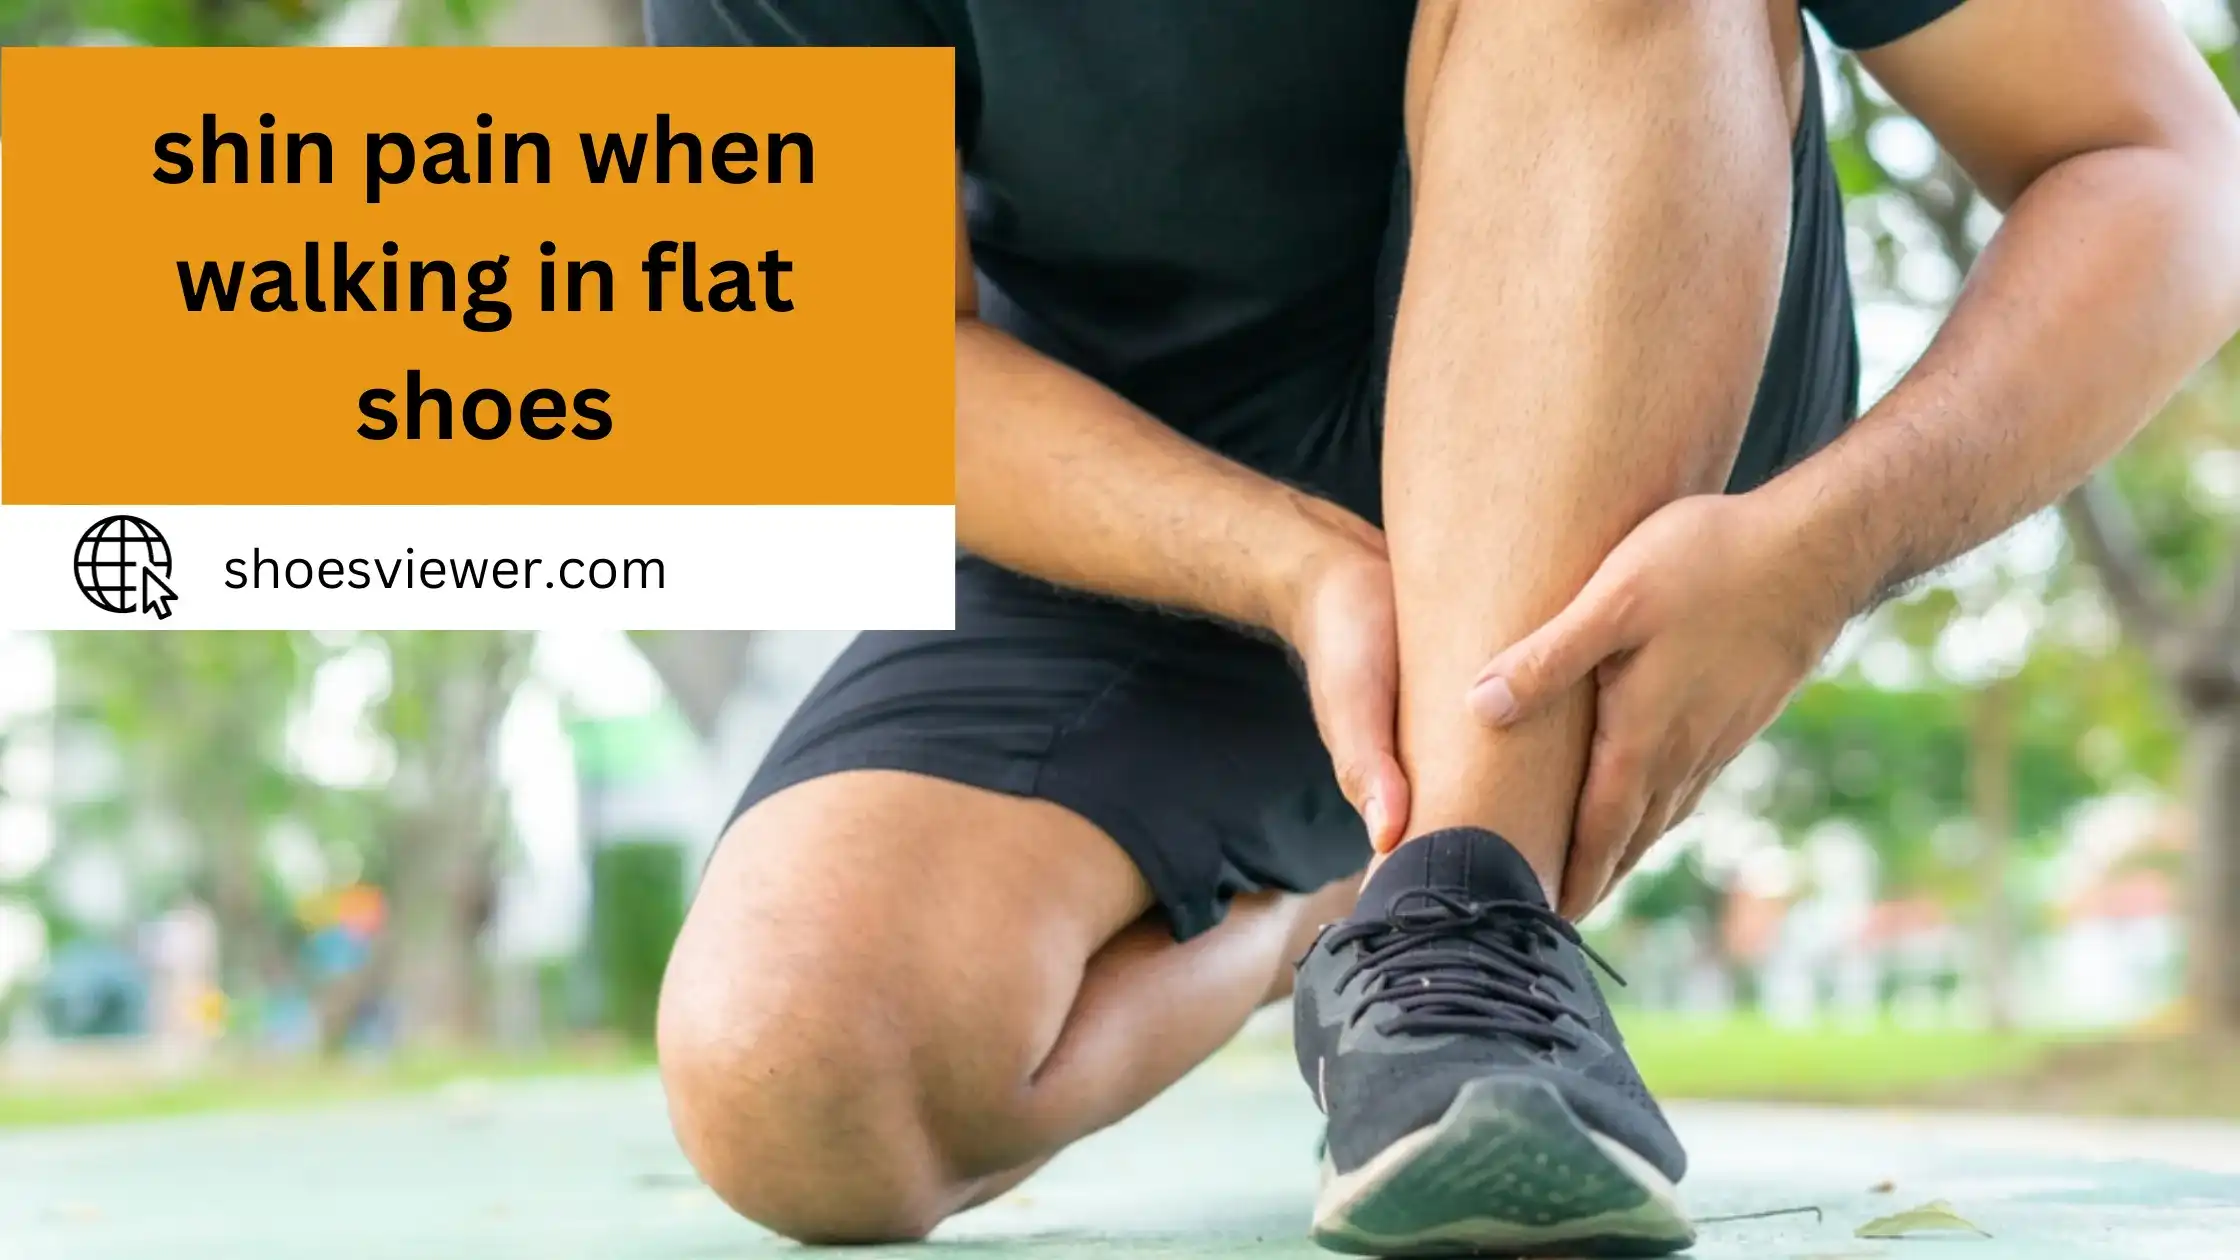 Shin Pain When Walking In Flat Shoes - Expert Analysis